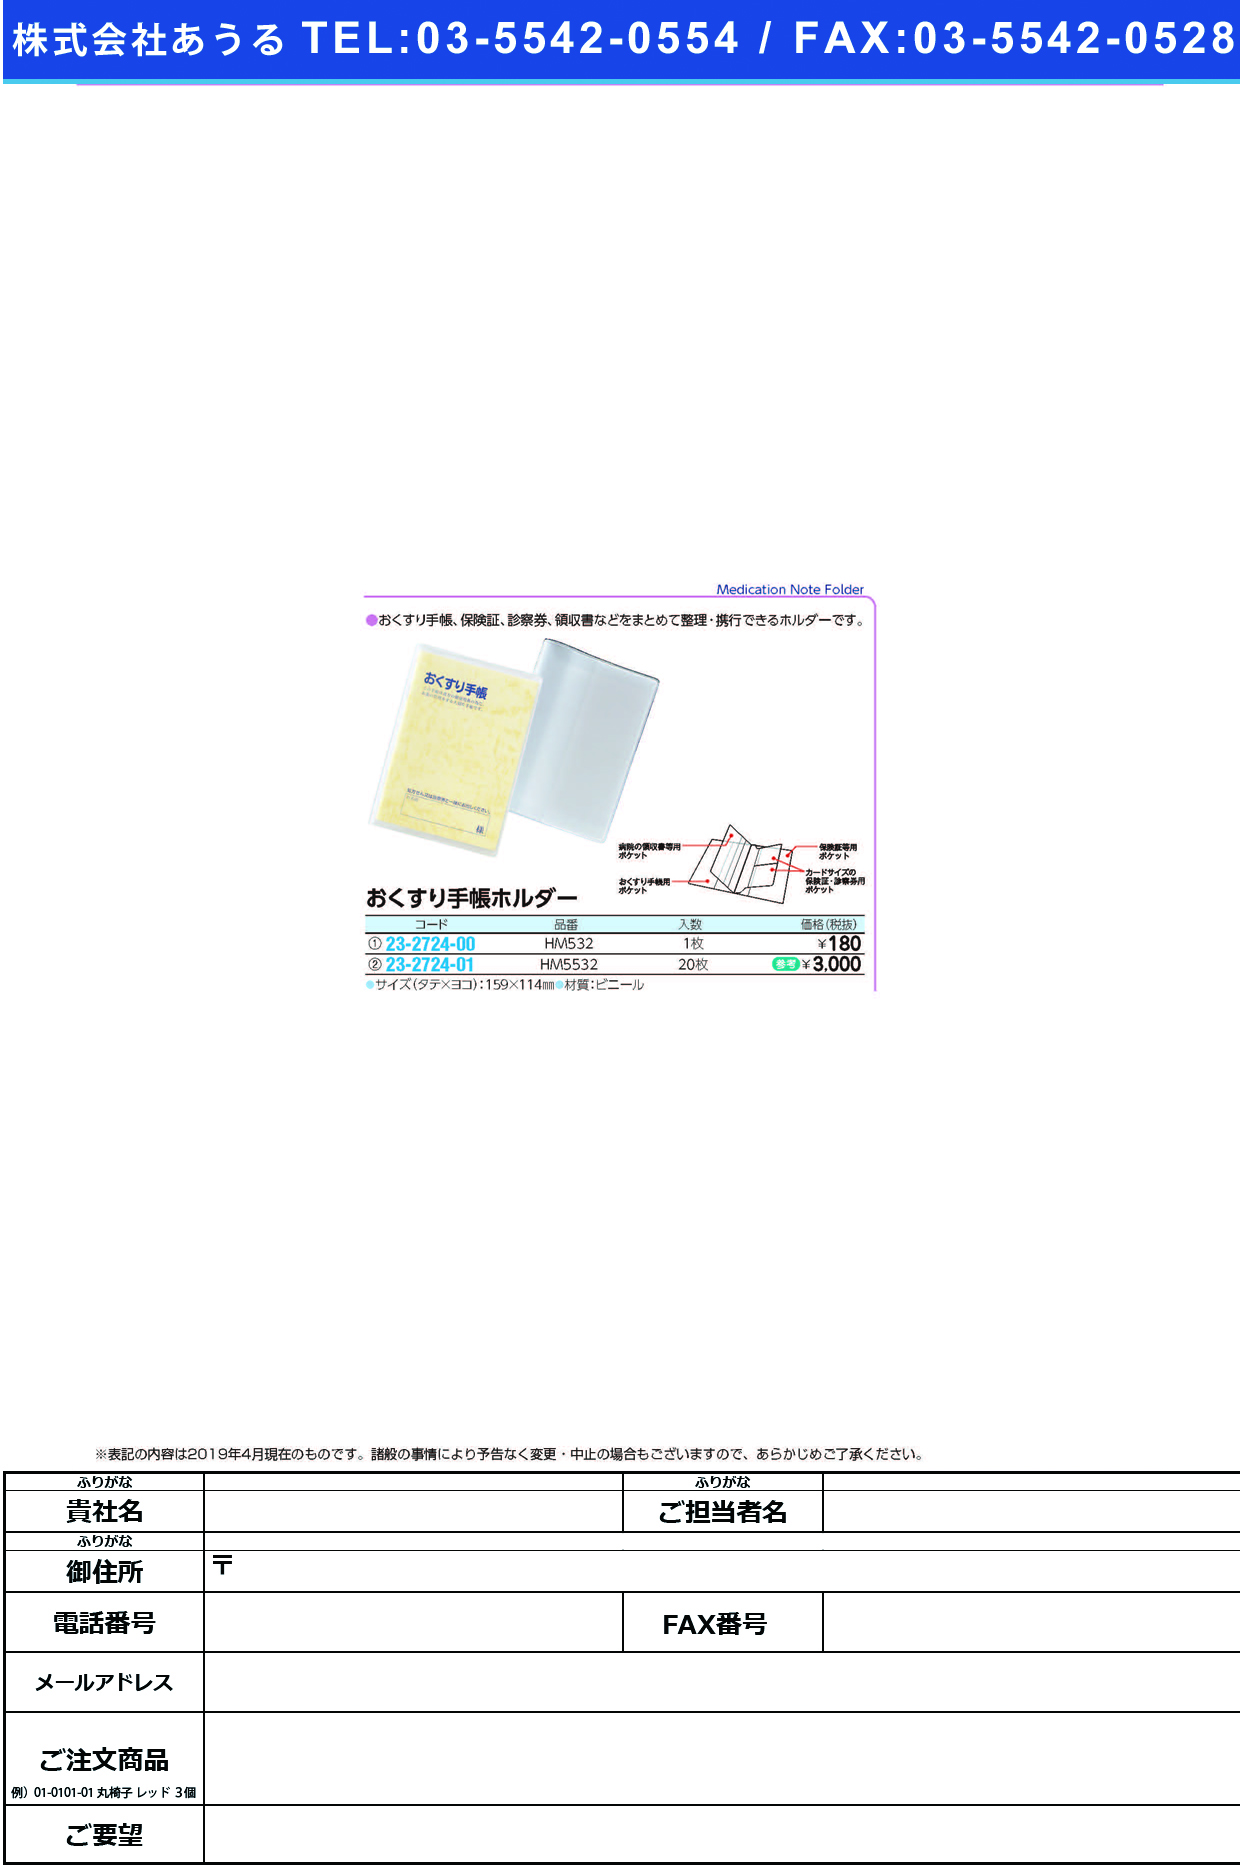 (23-2724-01)おくすり手帳ホルダー HM5532(20ﾏｲｲﾘ) ｵｸｽﾘﾃﾁｮｳﾎﾙﾀﾞｰ(ＬＩＨＩＴＬＡＢ．)【1組単位】【2019年カタログ商品】